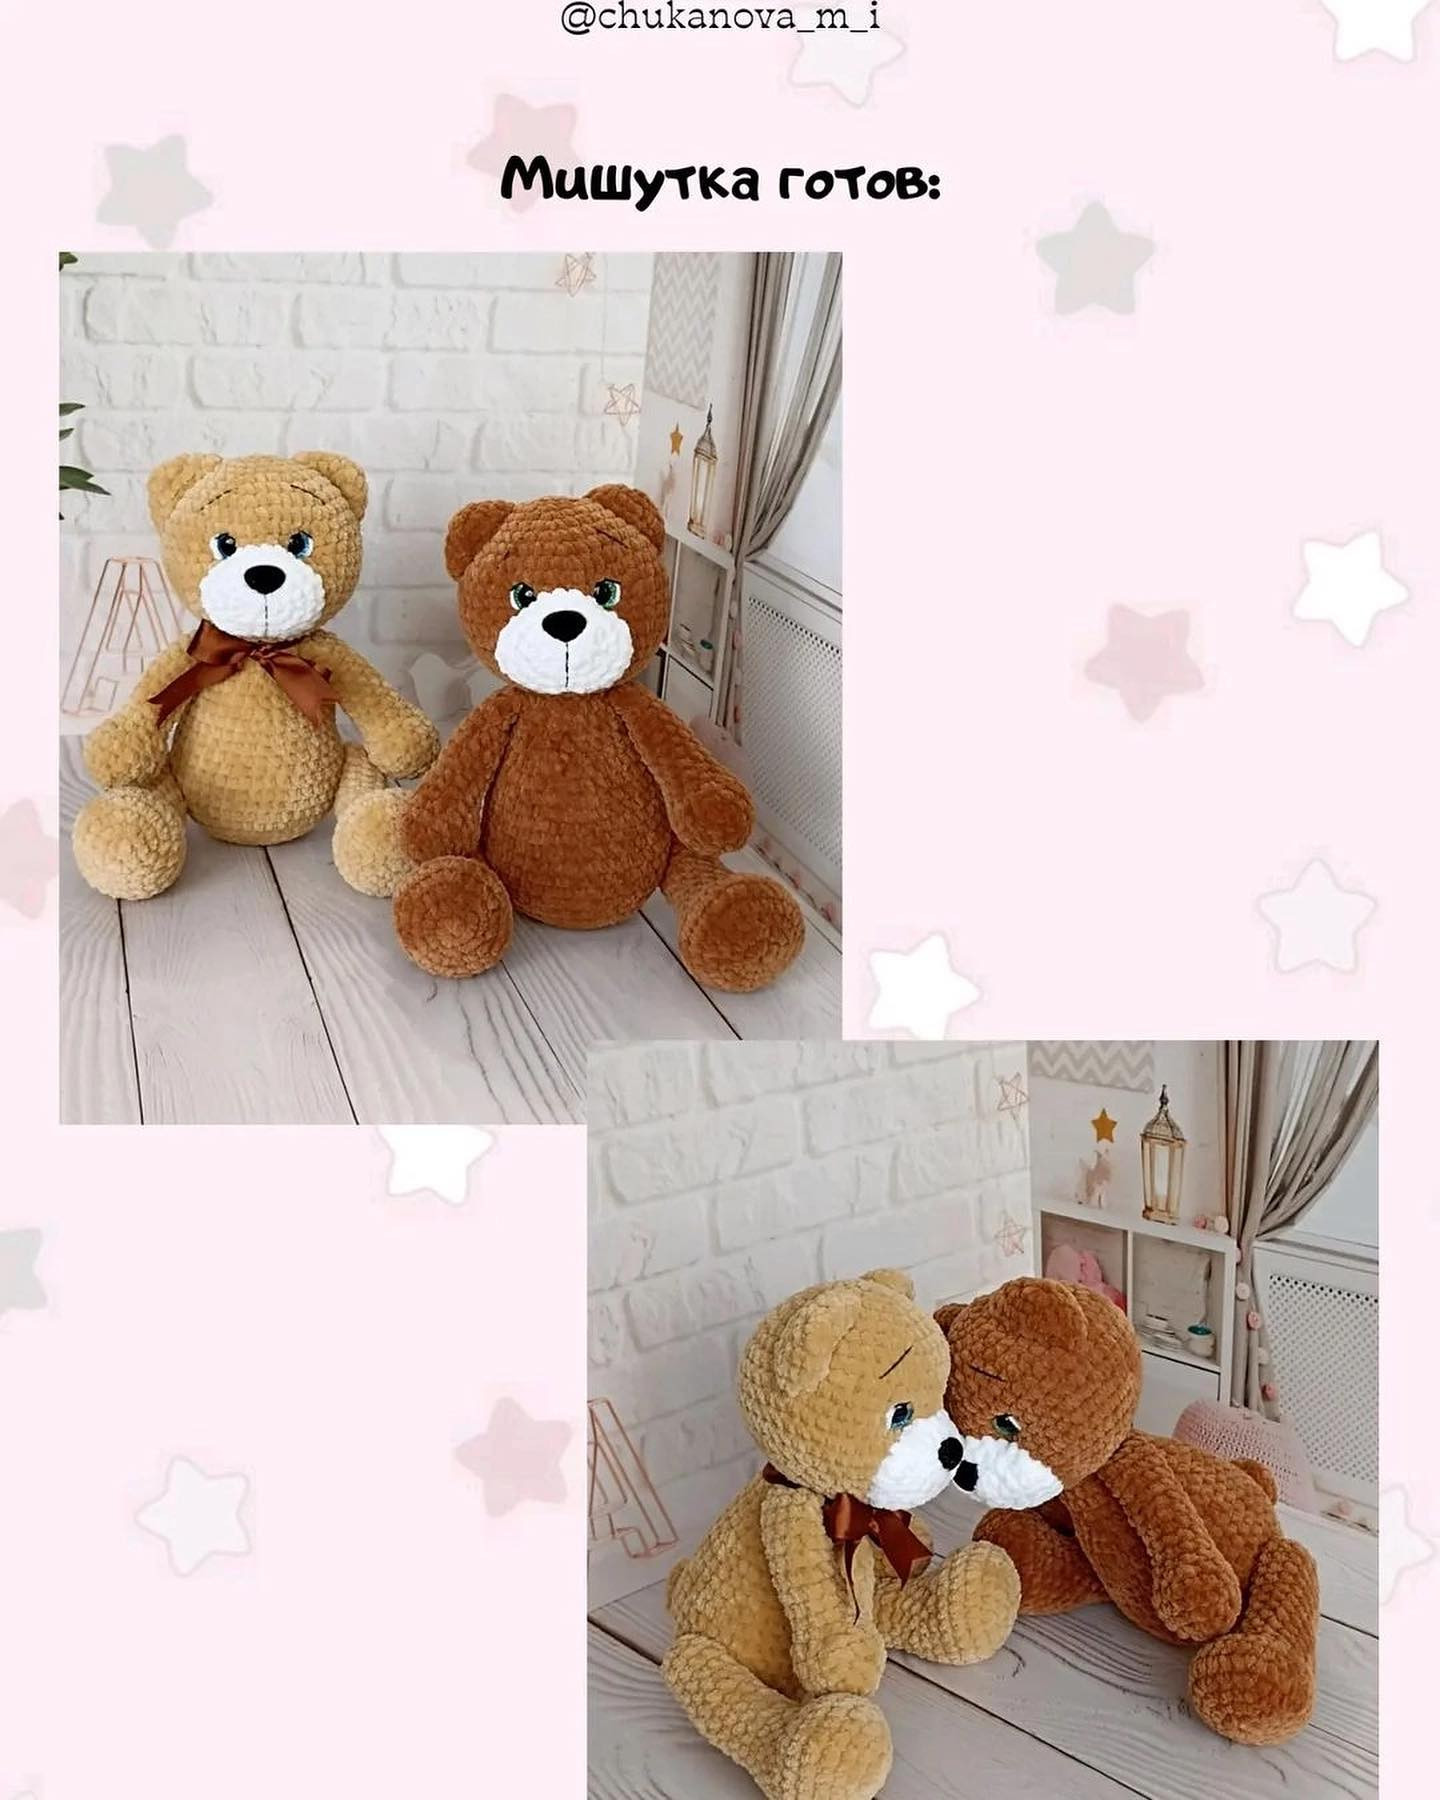 yellow bear, brown bear, white muzzle, brown bow.crochet pattern